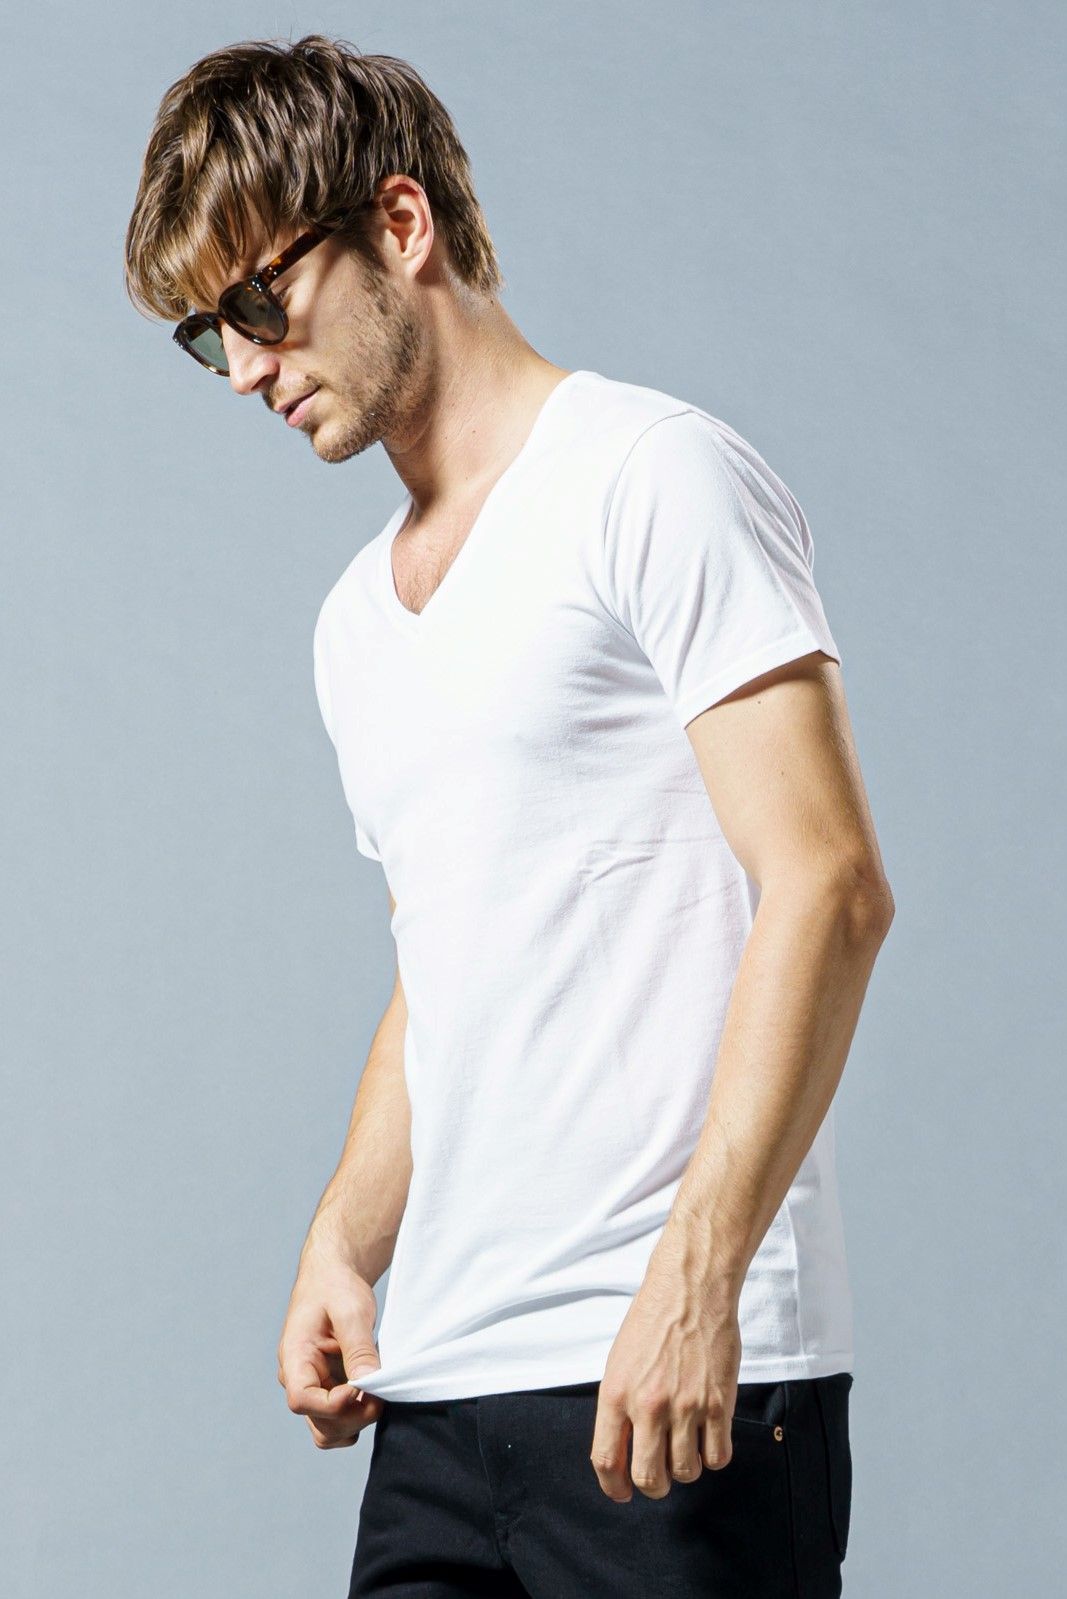 wjk - V-neck C/S S/S VネックTシャツ / white 【wjk】 | BRYAN